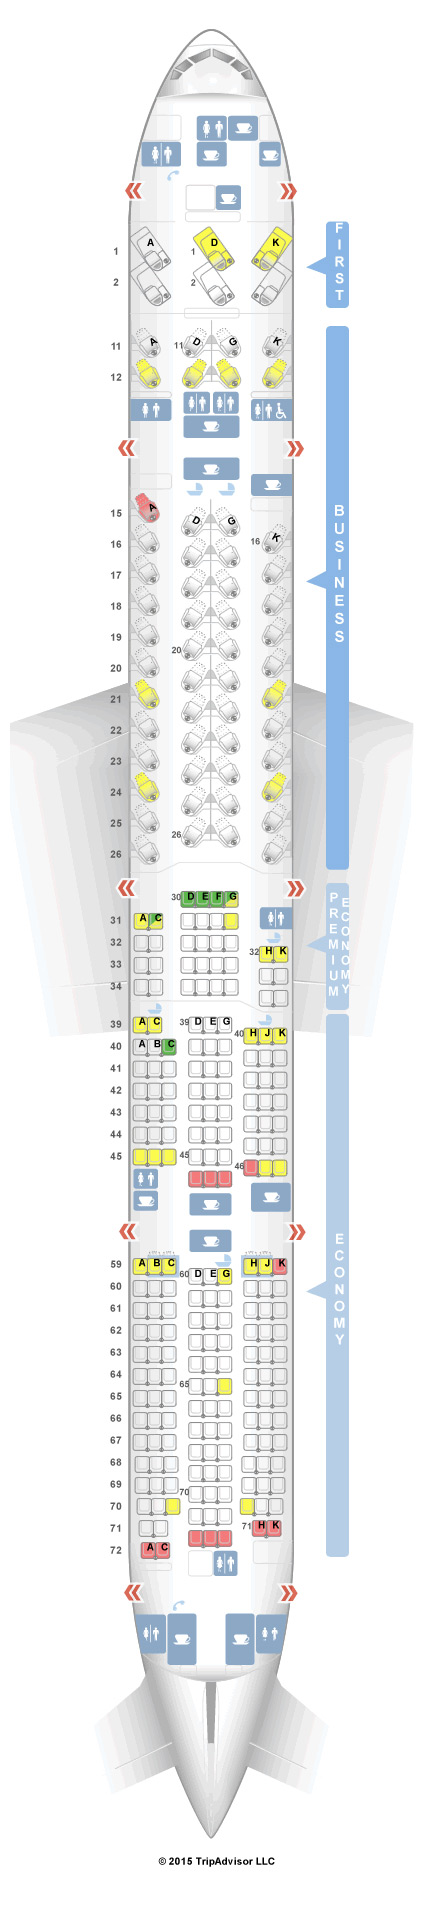 Aeroflot Boeing 777 300er Seating Chart